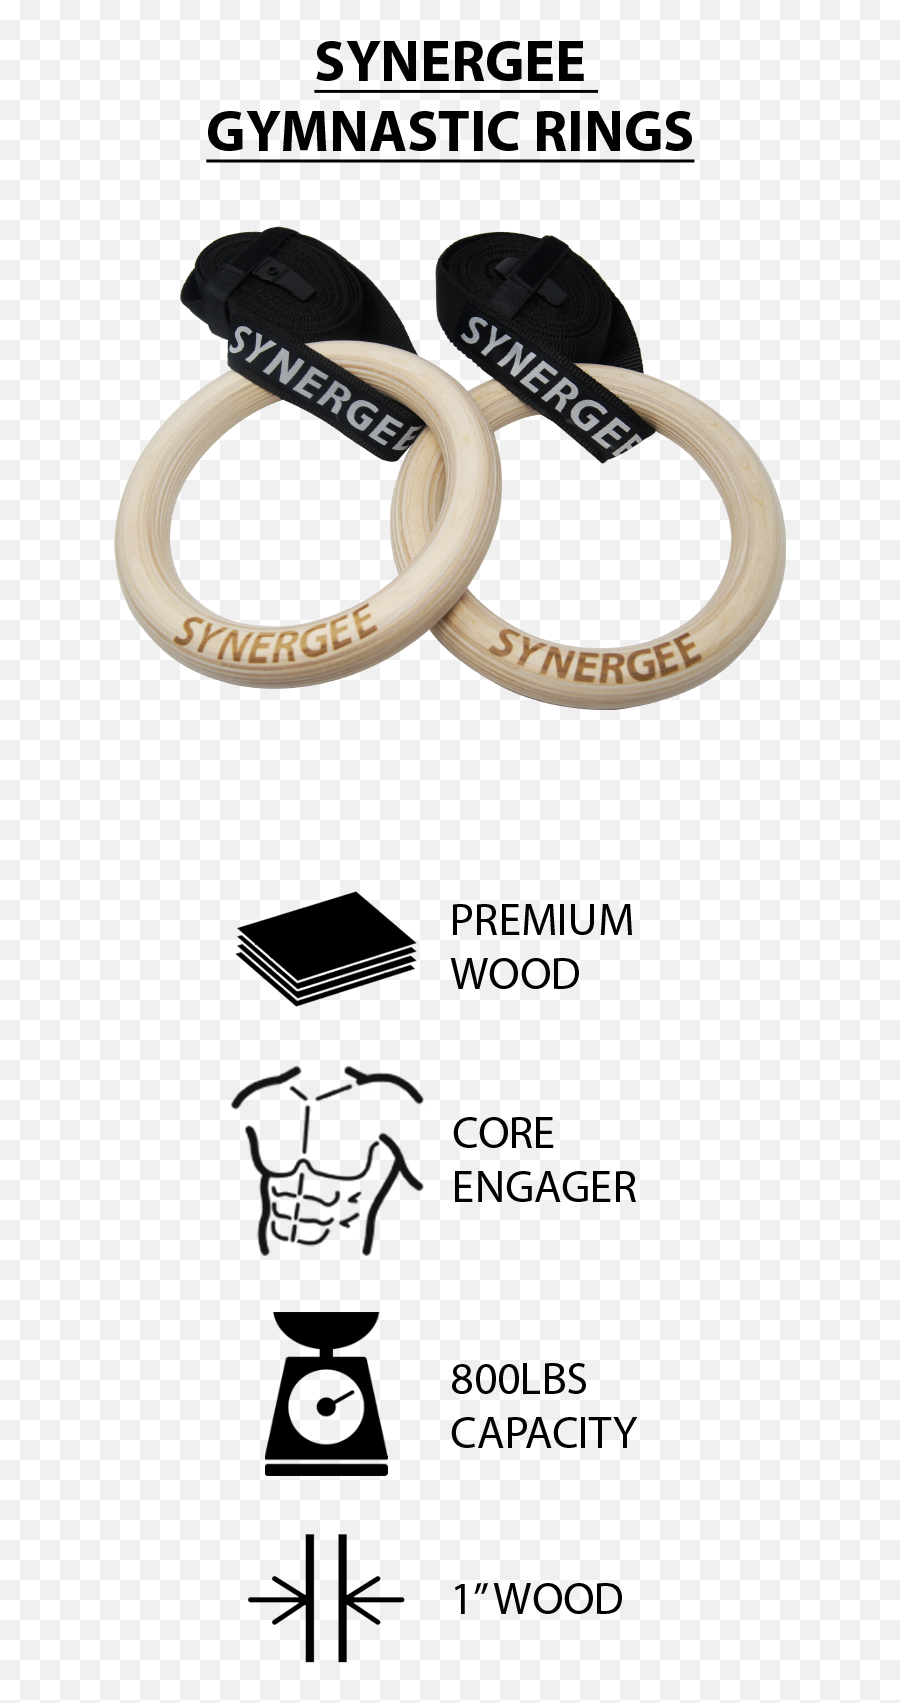 Dips Synergee 925 Diameter Wood Olympic Gymnastics Rings Emoji,Olympic Rings Png